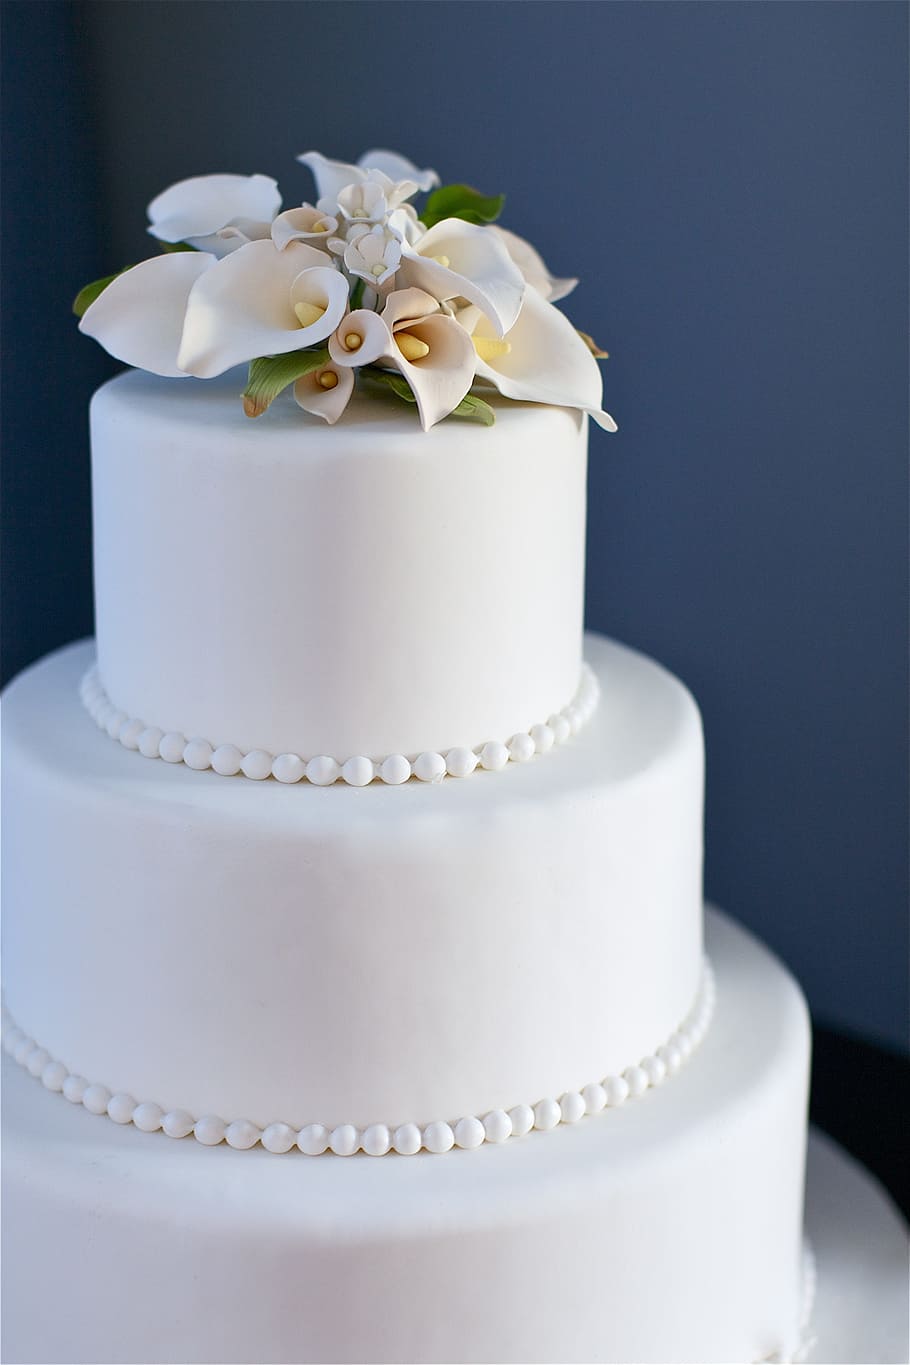 white, icing, coated, 3-tier, fondant, cake, photograph, blue, wedding cake, wedding